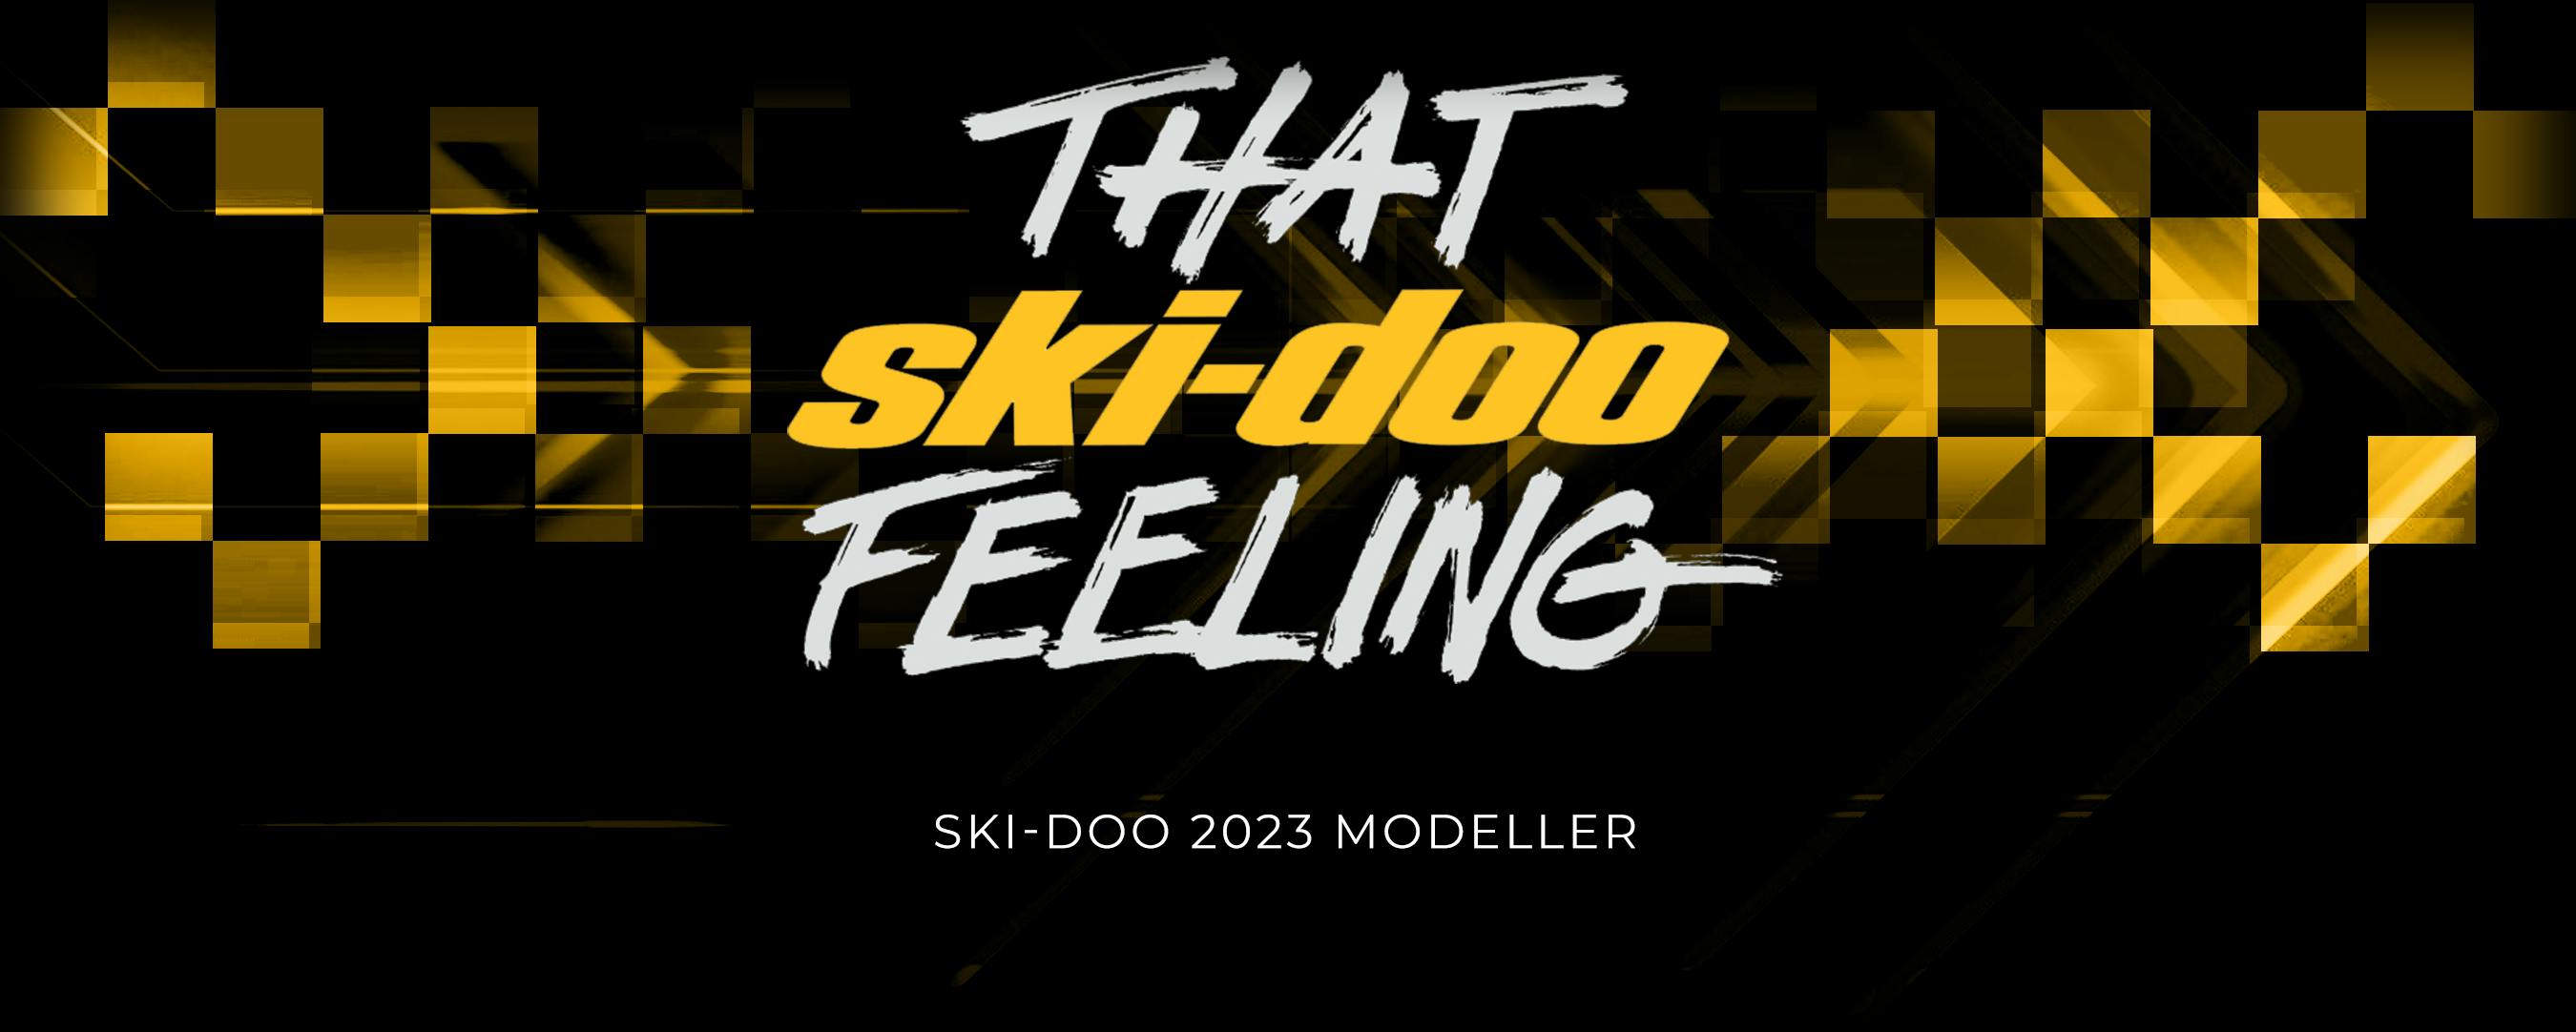 Ski-Doo 2023 Modeller